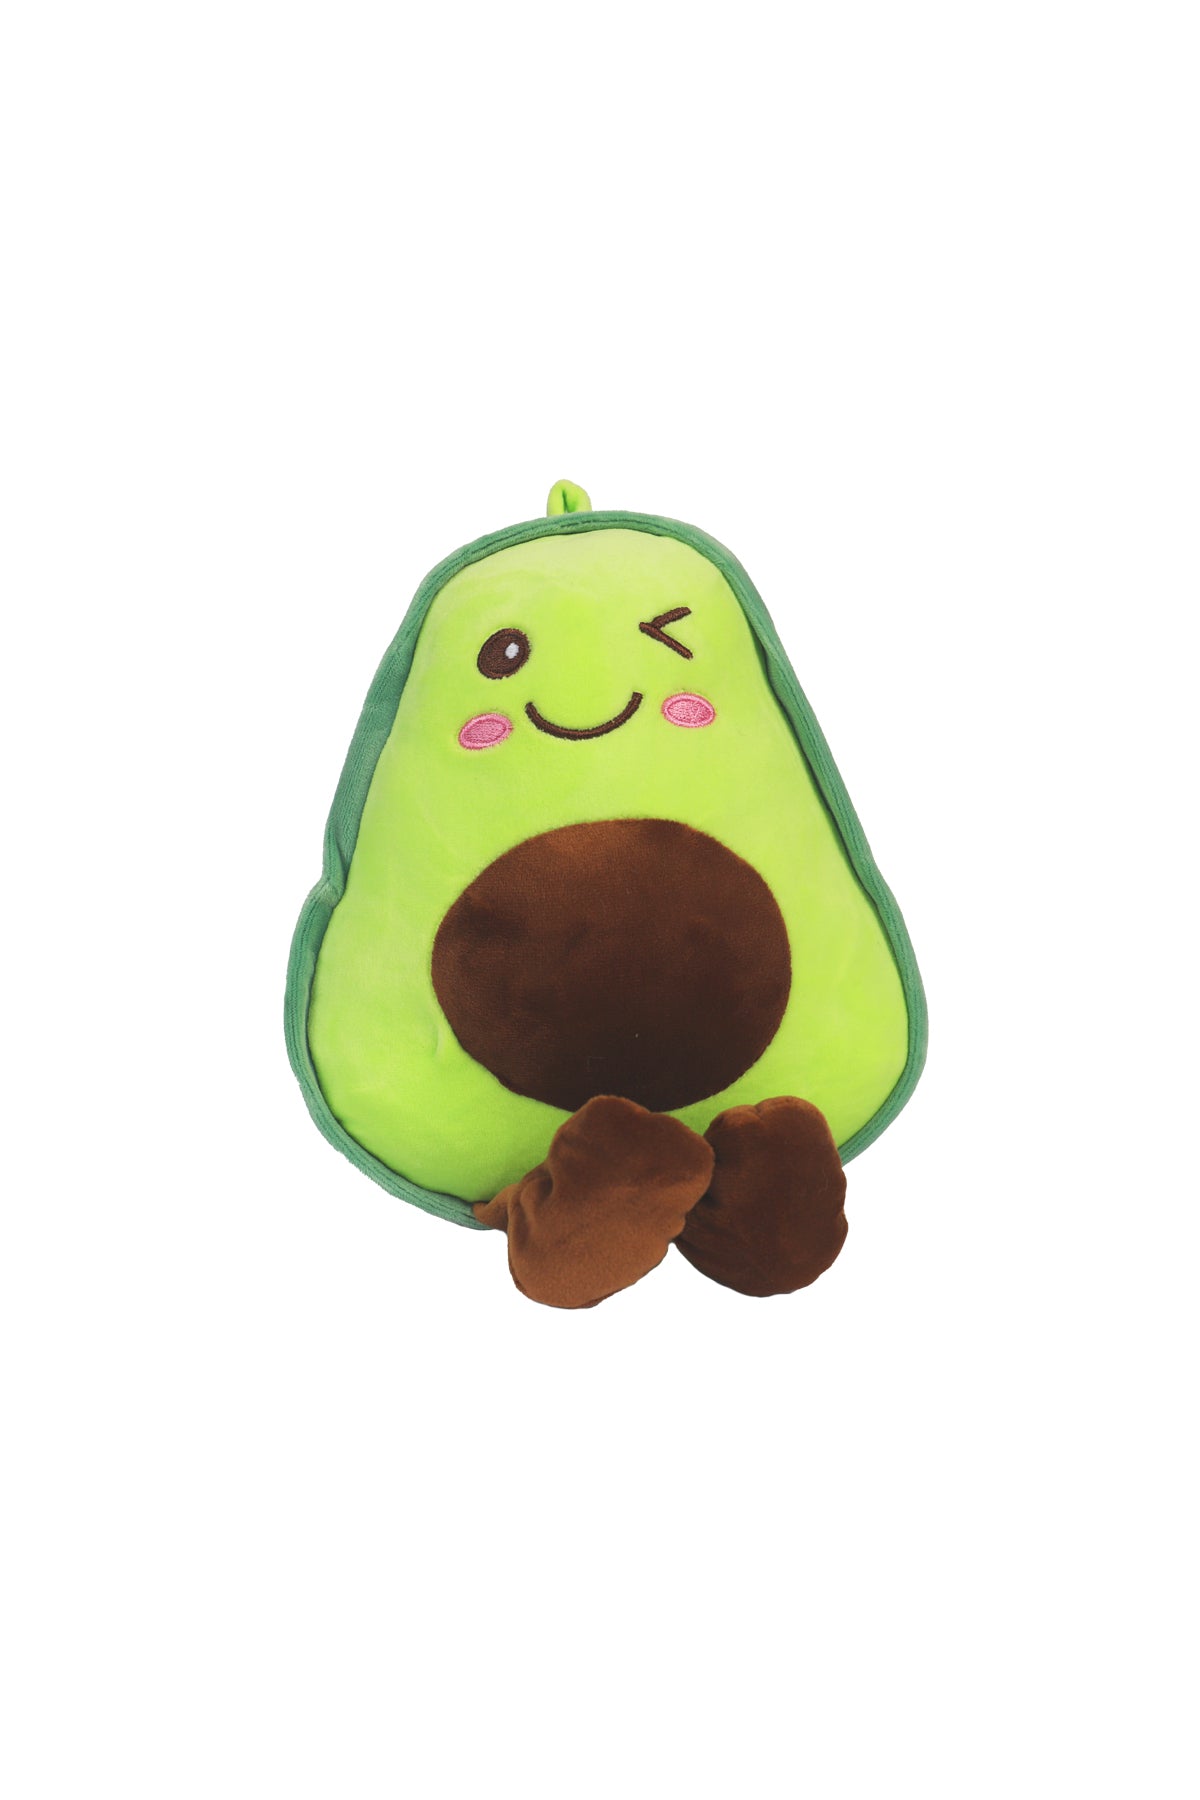 Stuffed Soft Avocado Toy